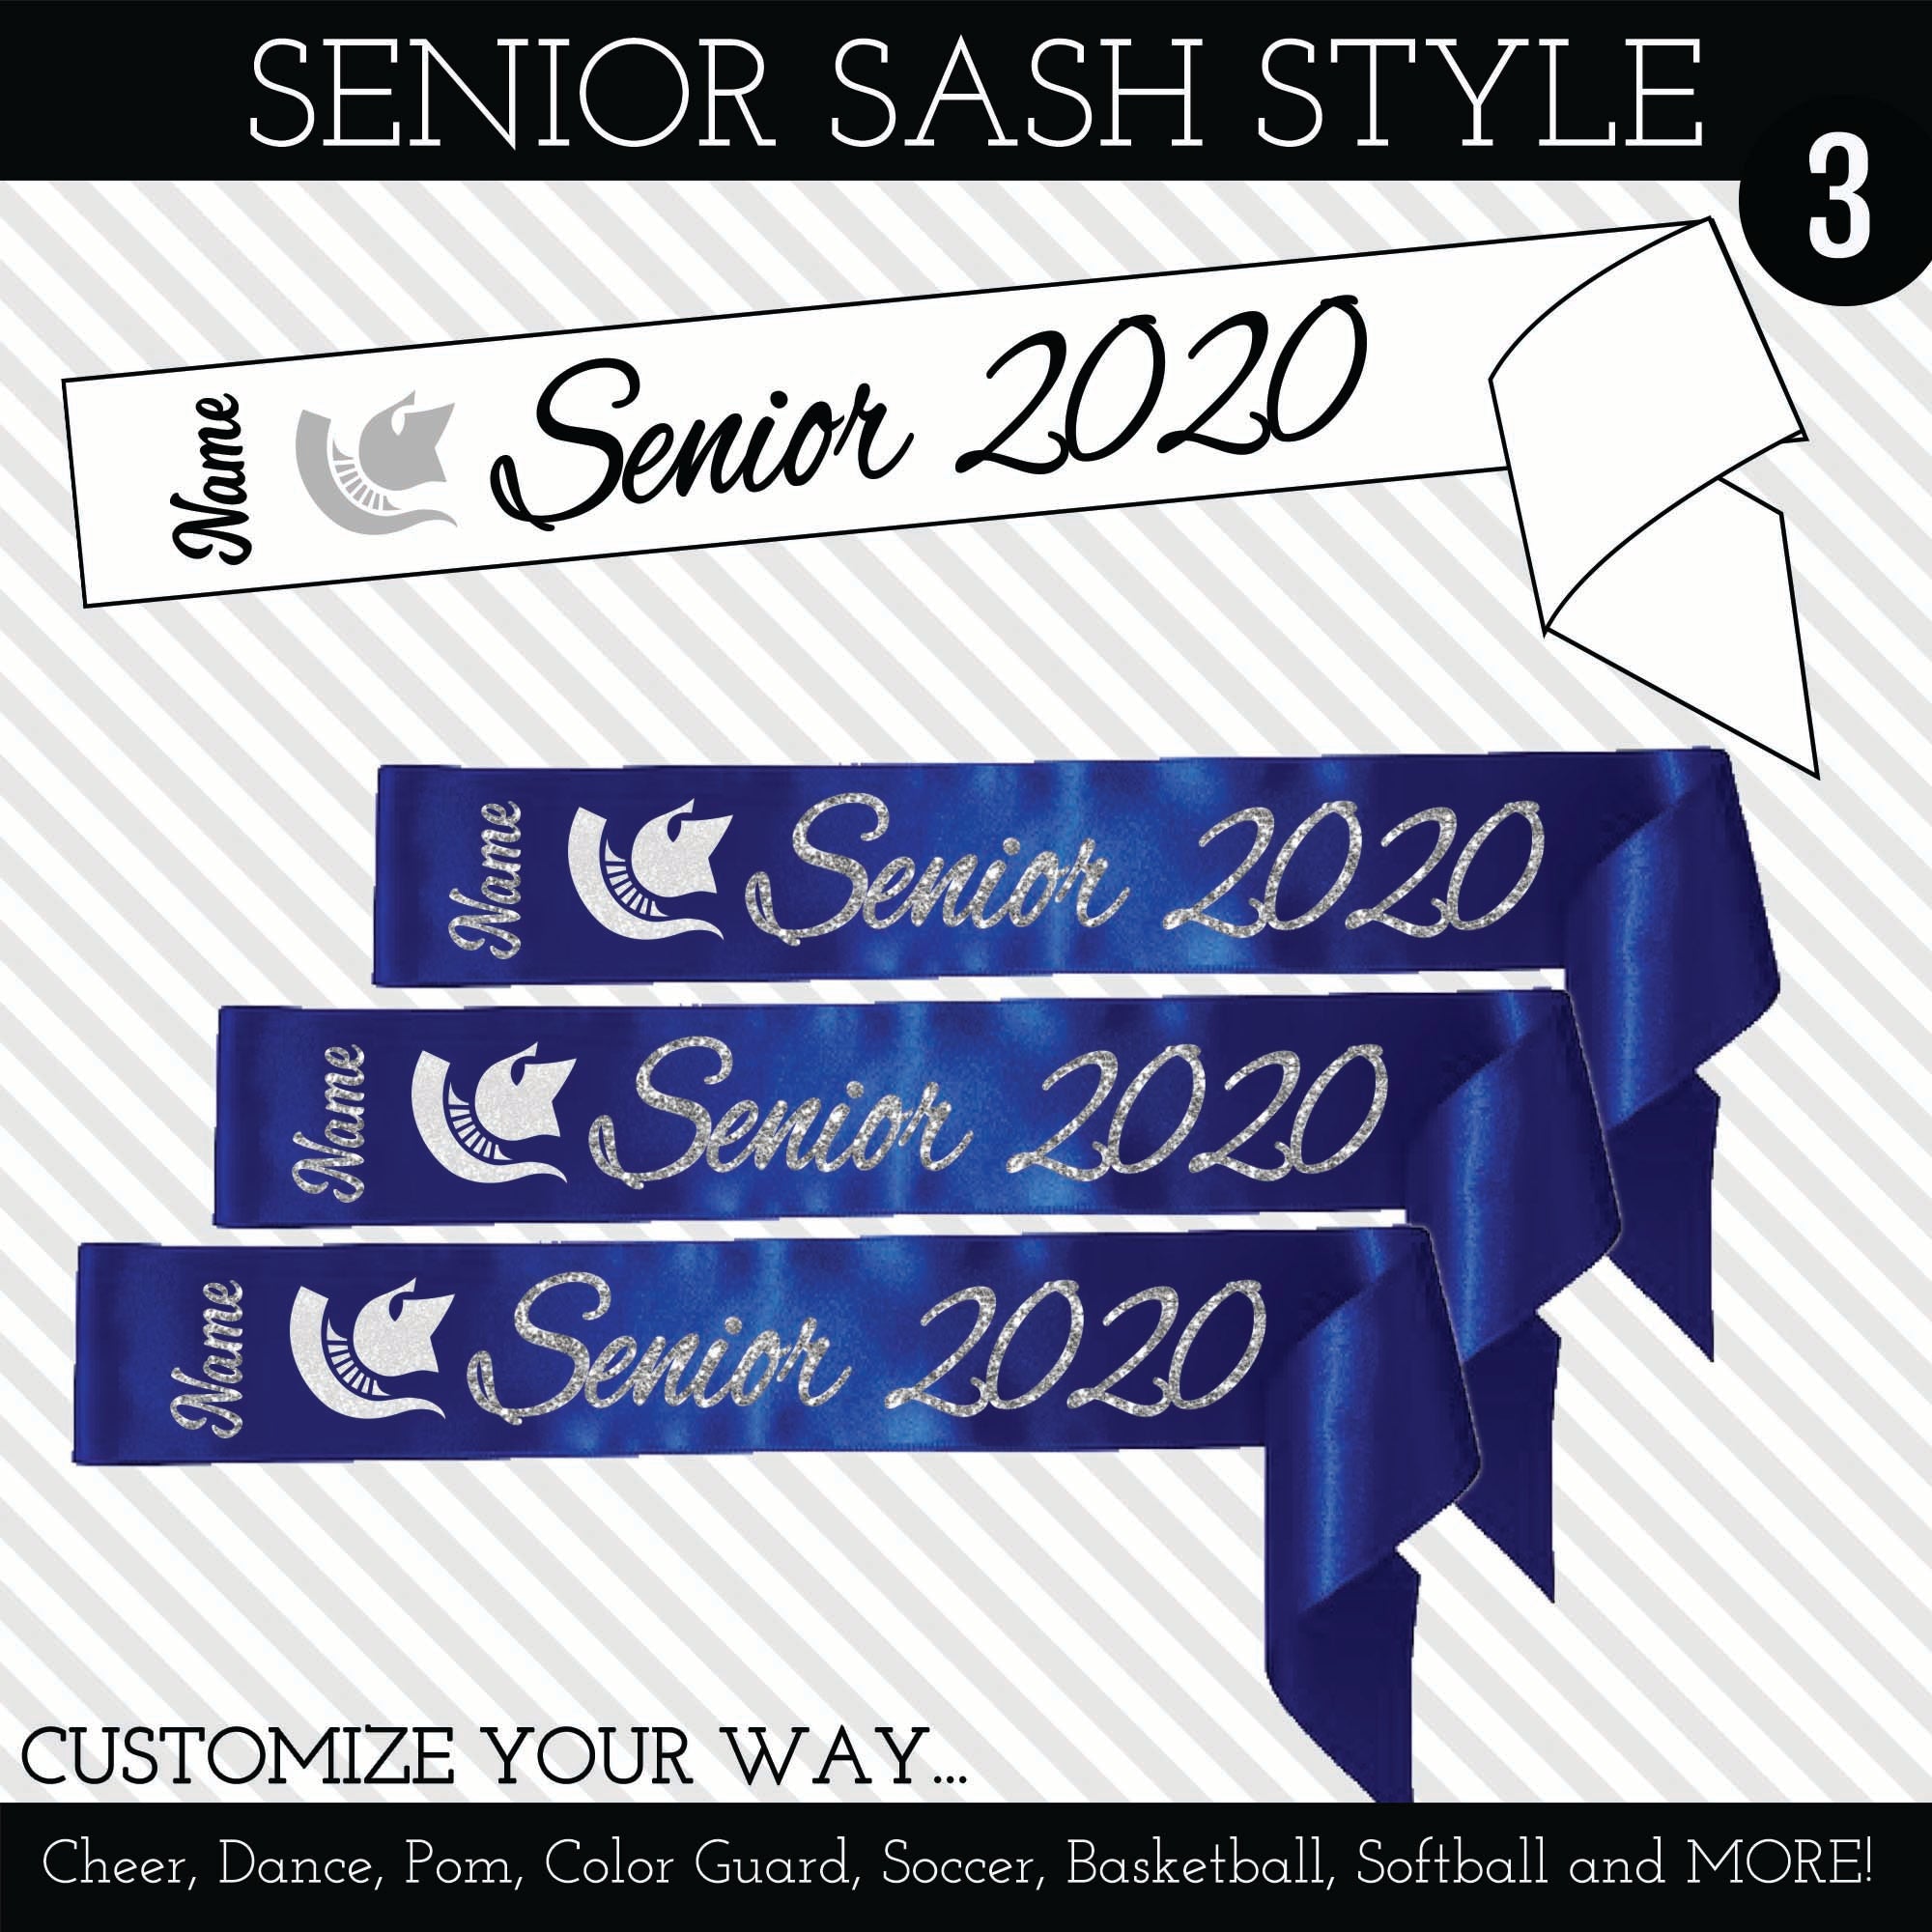 Senior Sash Style 3